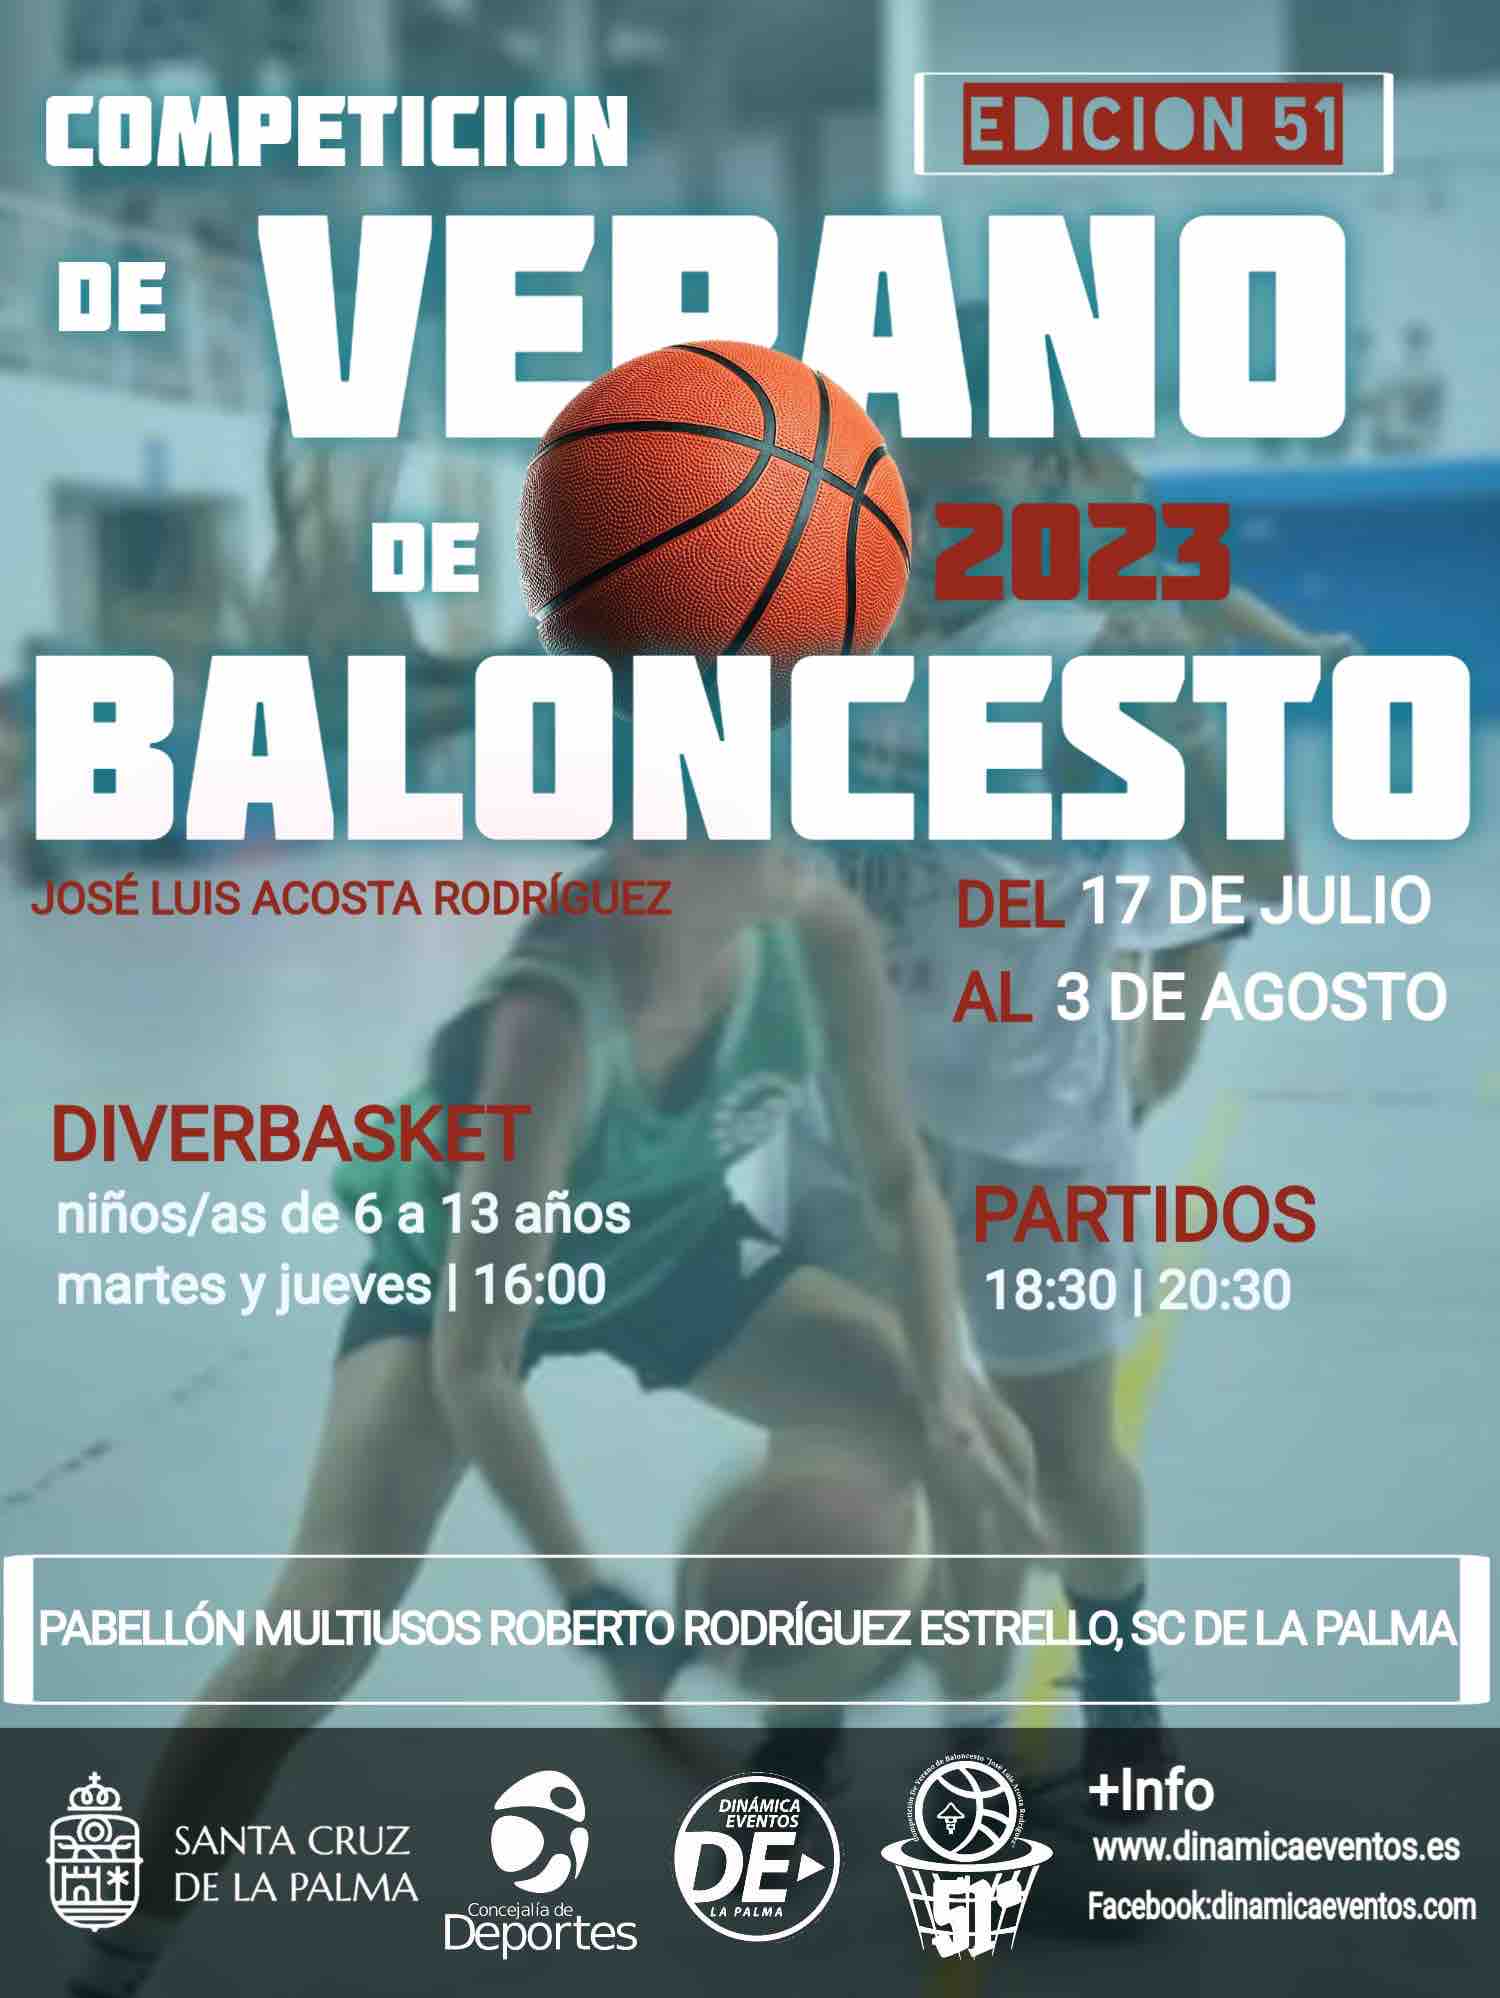 El ayuntamiento de Santa Cruz de La Palma abre la inscripción para la 51 edición de la Competición de Verano de baloncesto ‘José Luis Acosta Rodríguez’